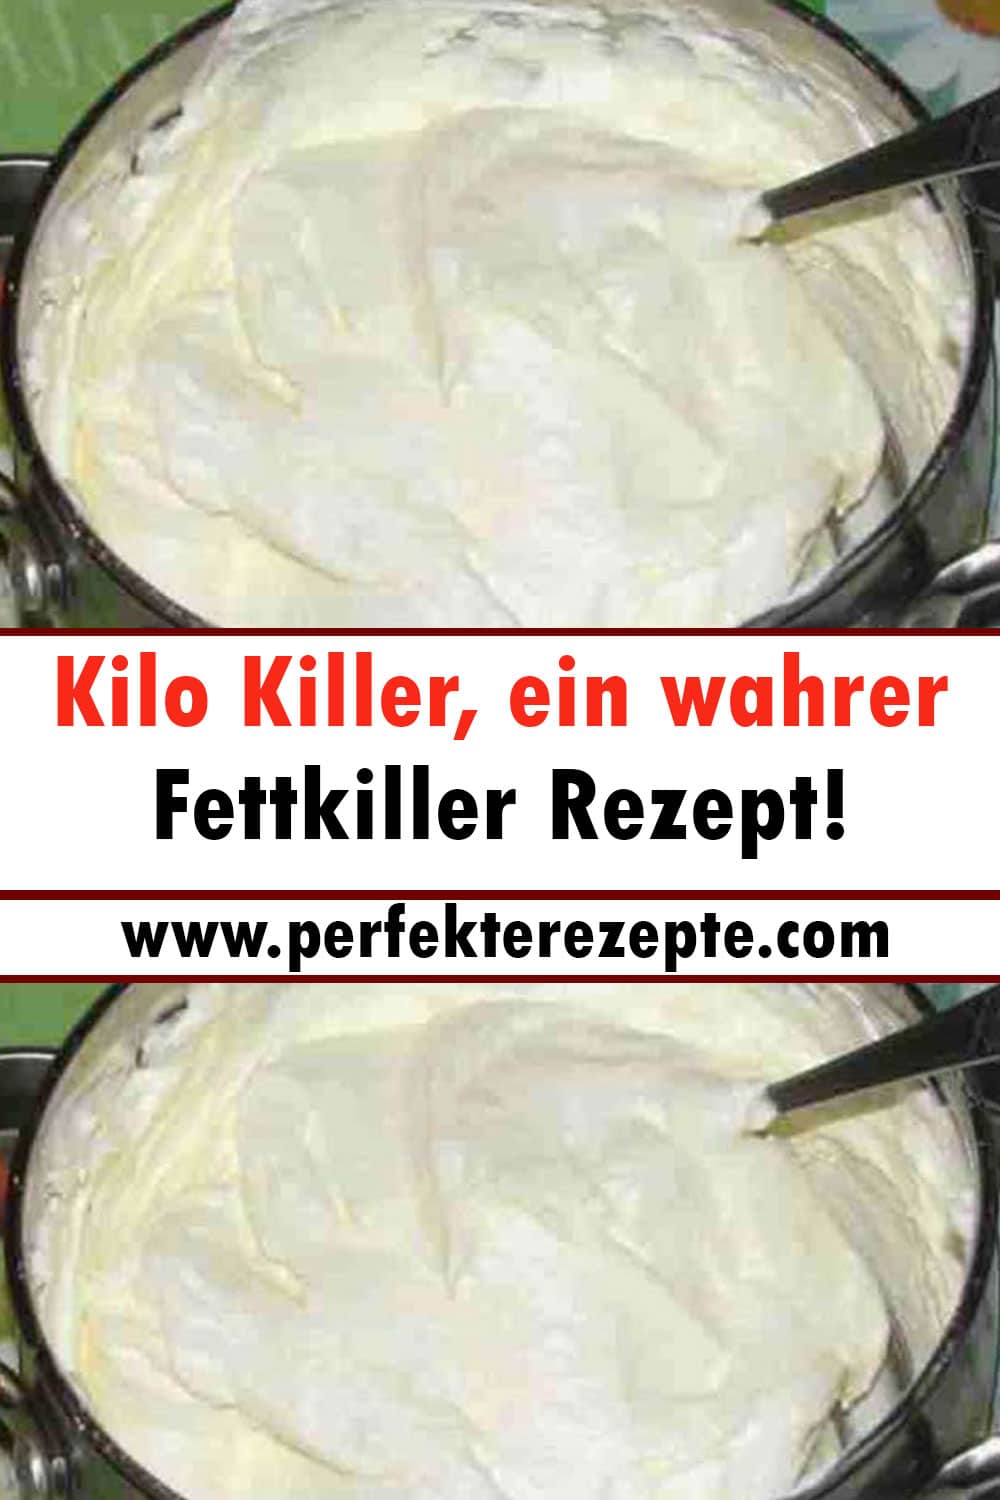 Kilo Killer, ein wahrer Fettkiller Rezept!